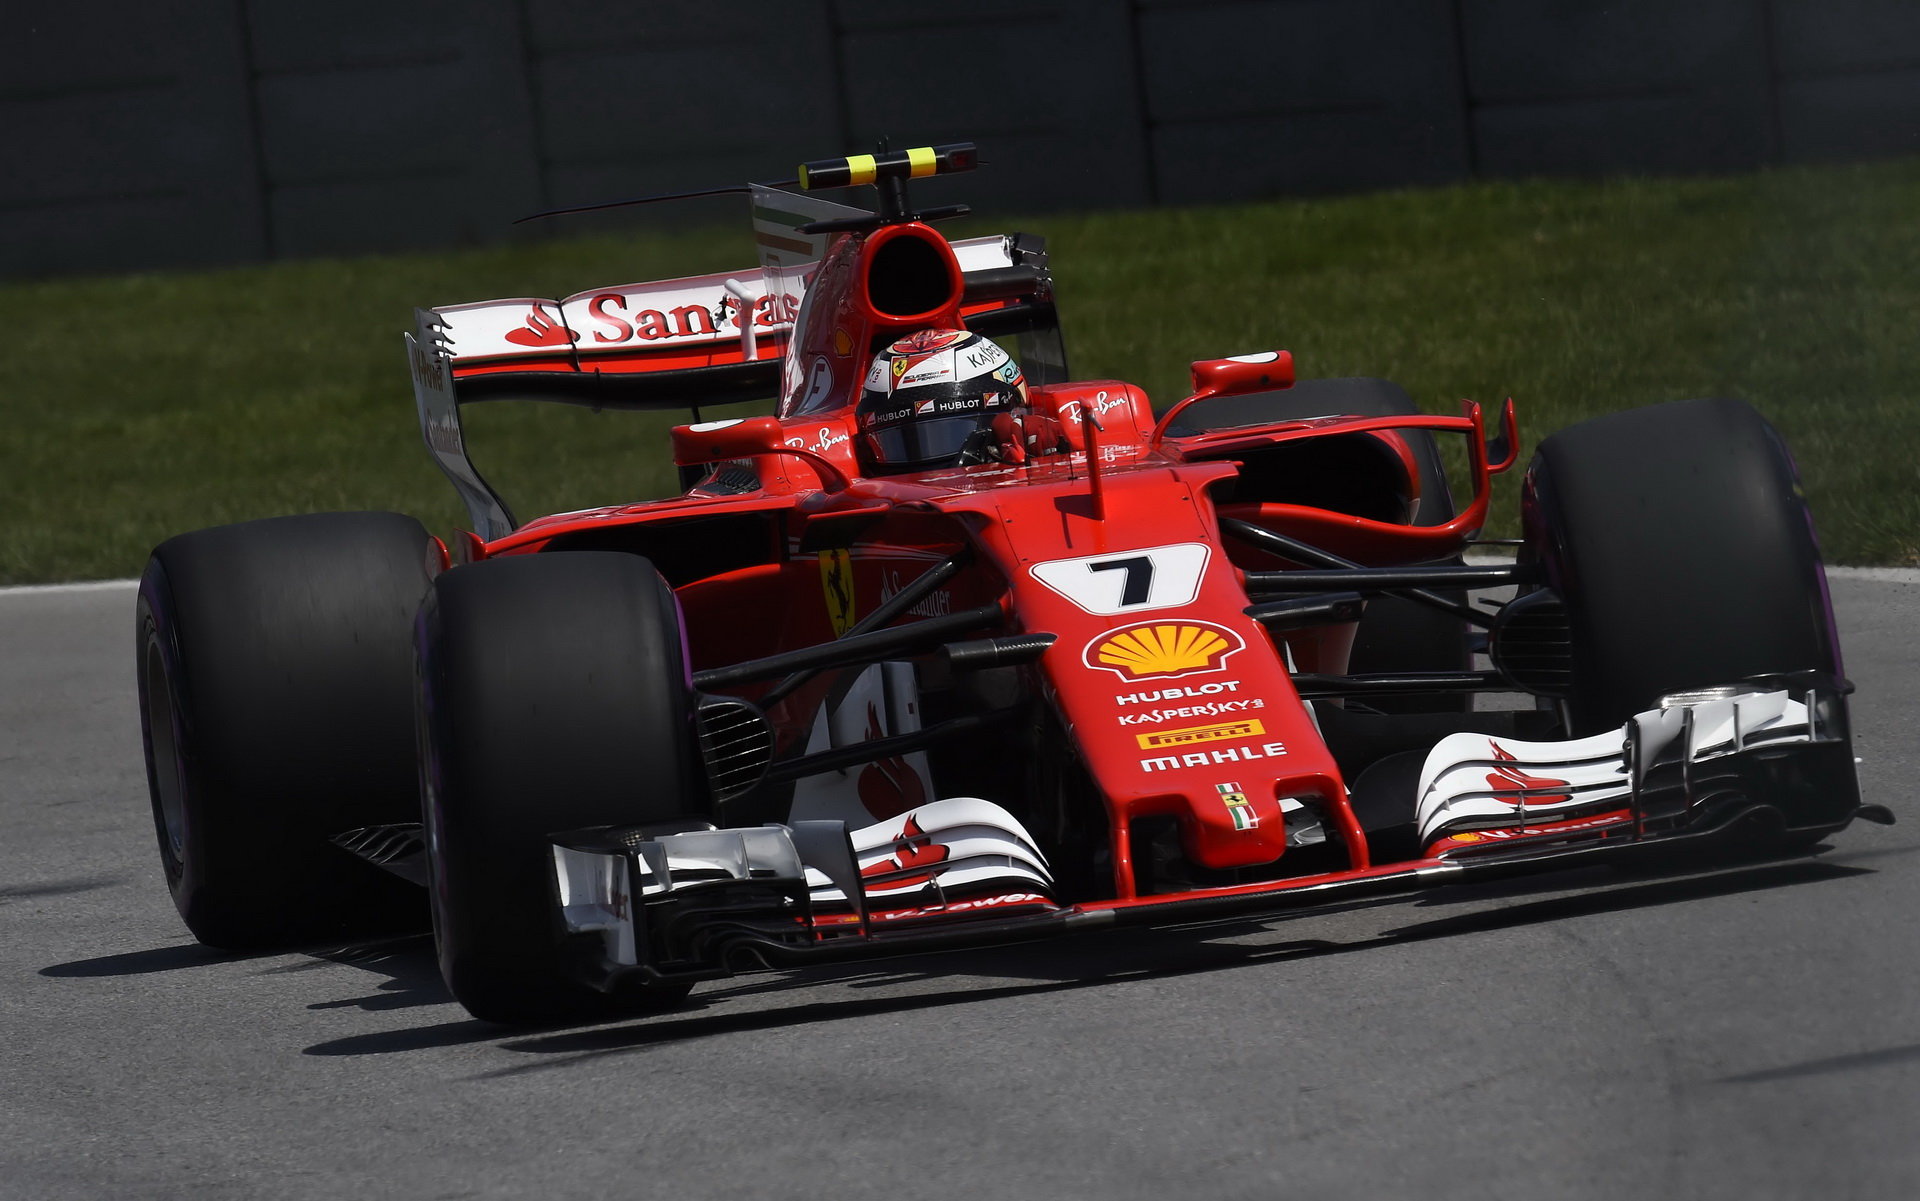 Ferrari je týmem, který se díky předchozímu šéfovi Berniemu Ecclestoneovi těší z největších finančních bonusů bez ohledu na dosažené výsledky